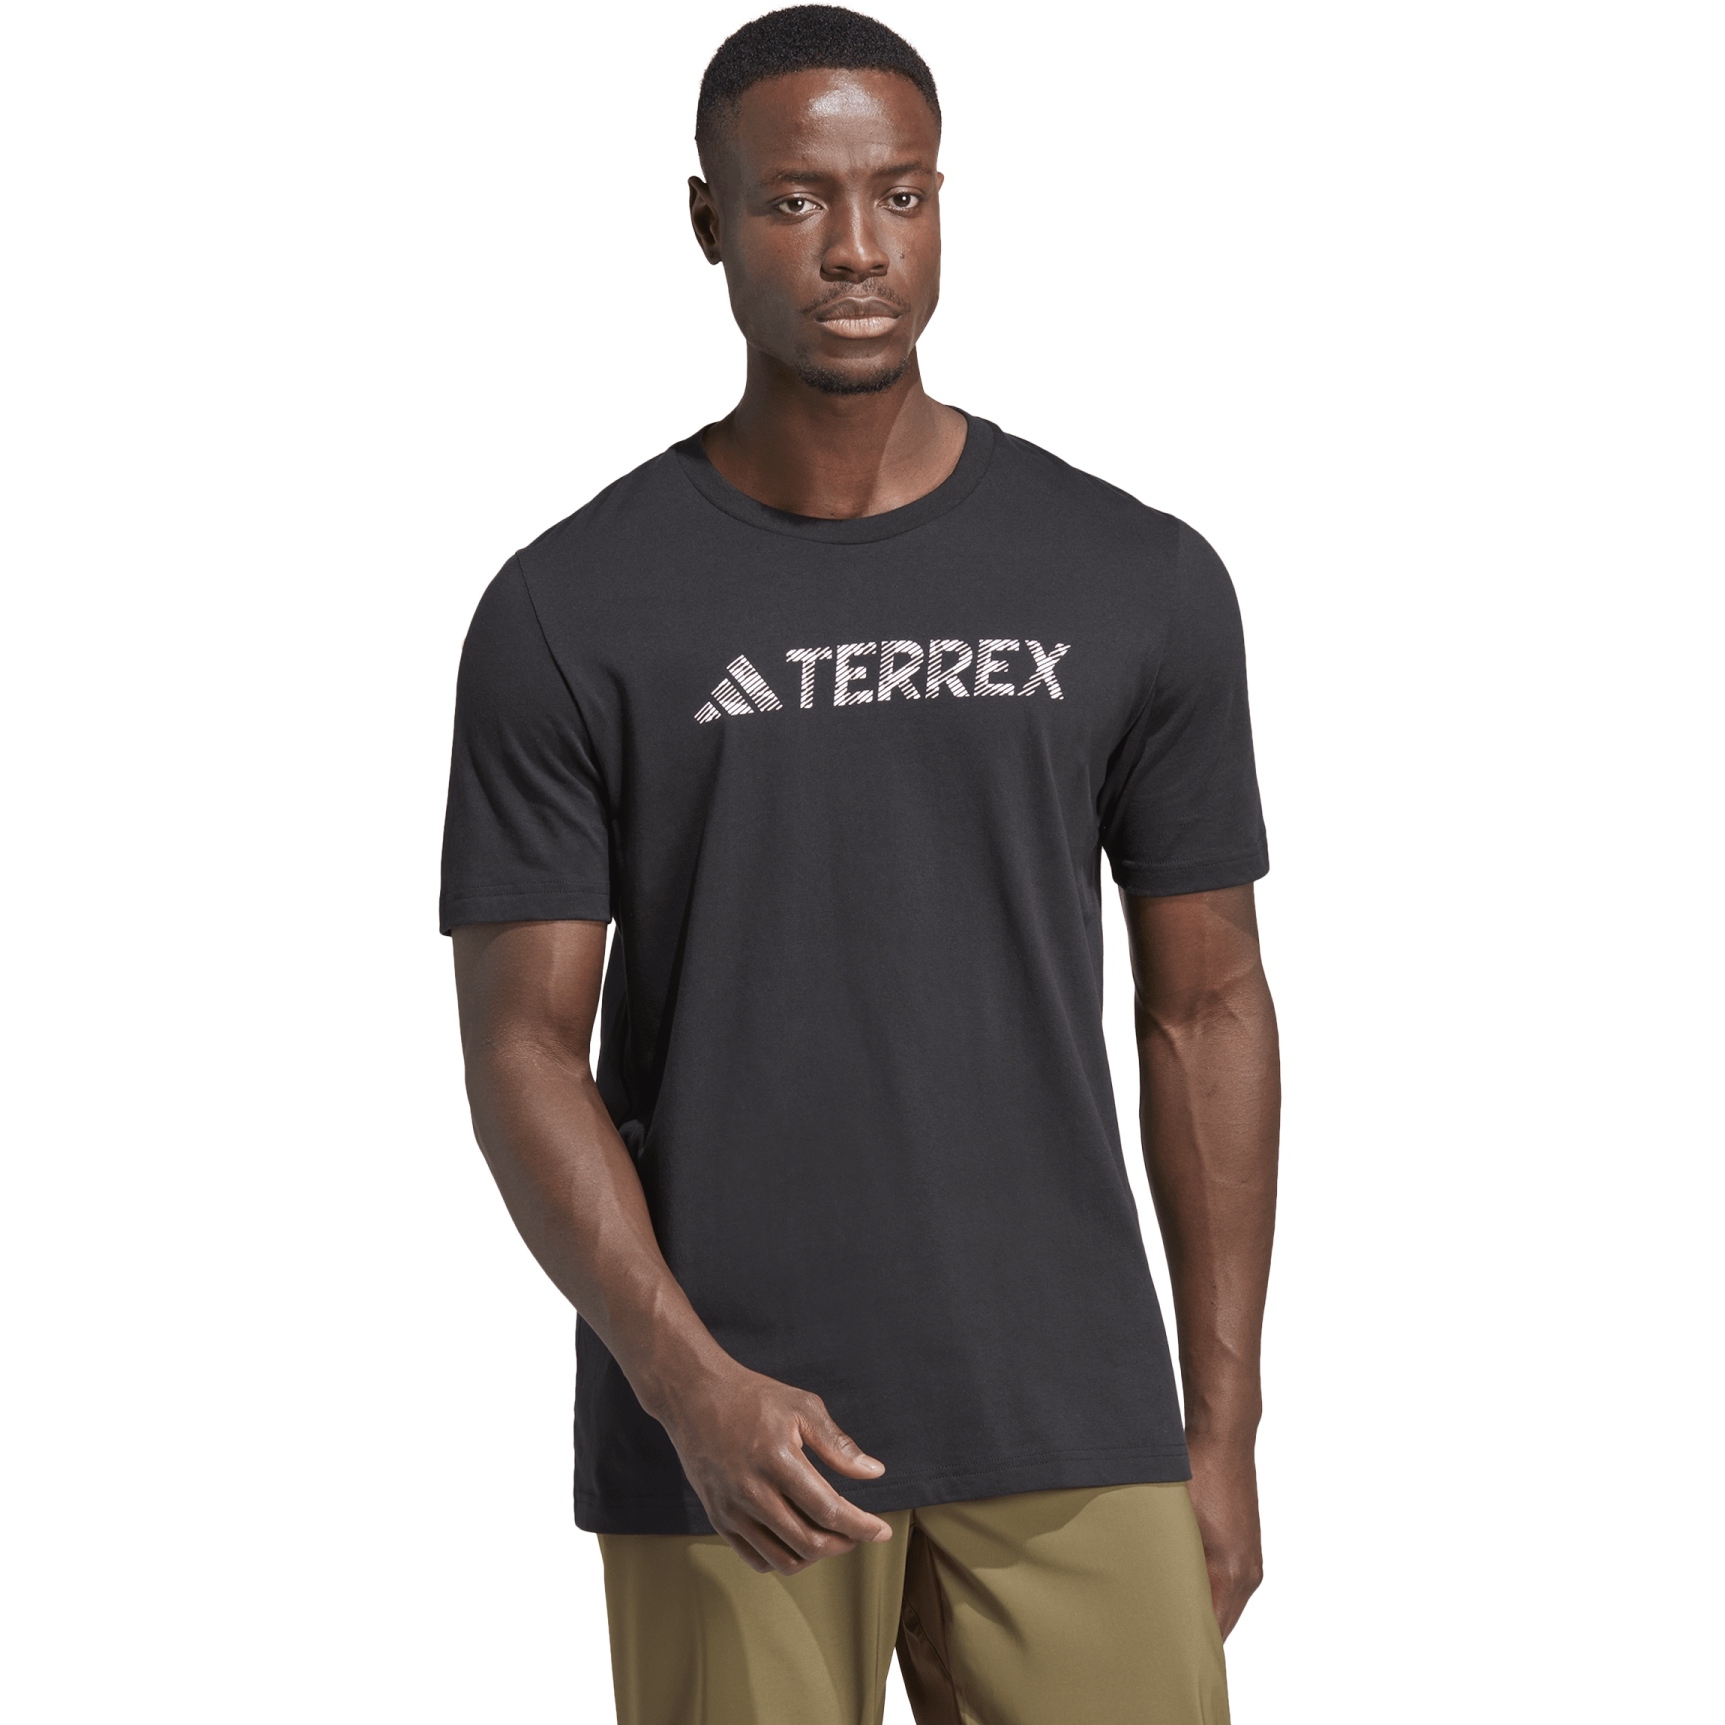 Produktbild von adidas TERREX Classic Logo T-Shirt Herren - schwarz HZ1399